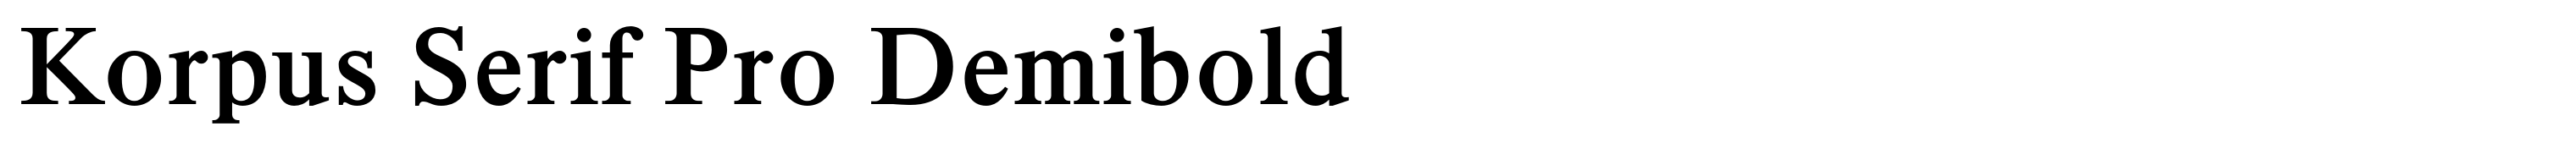 Korpus Serif Pro Demibold